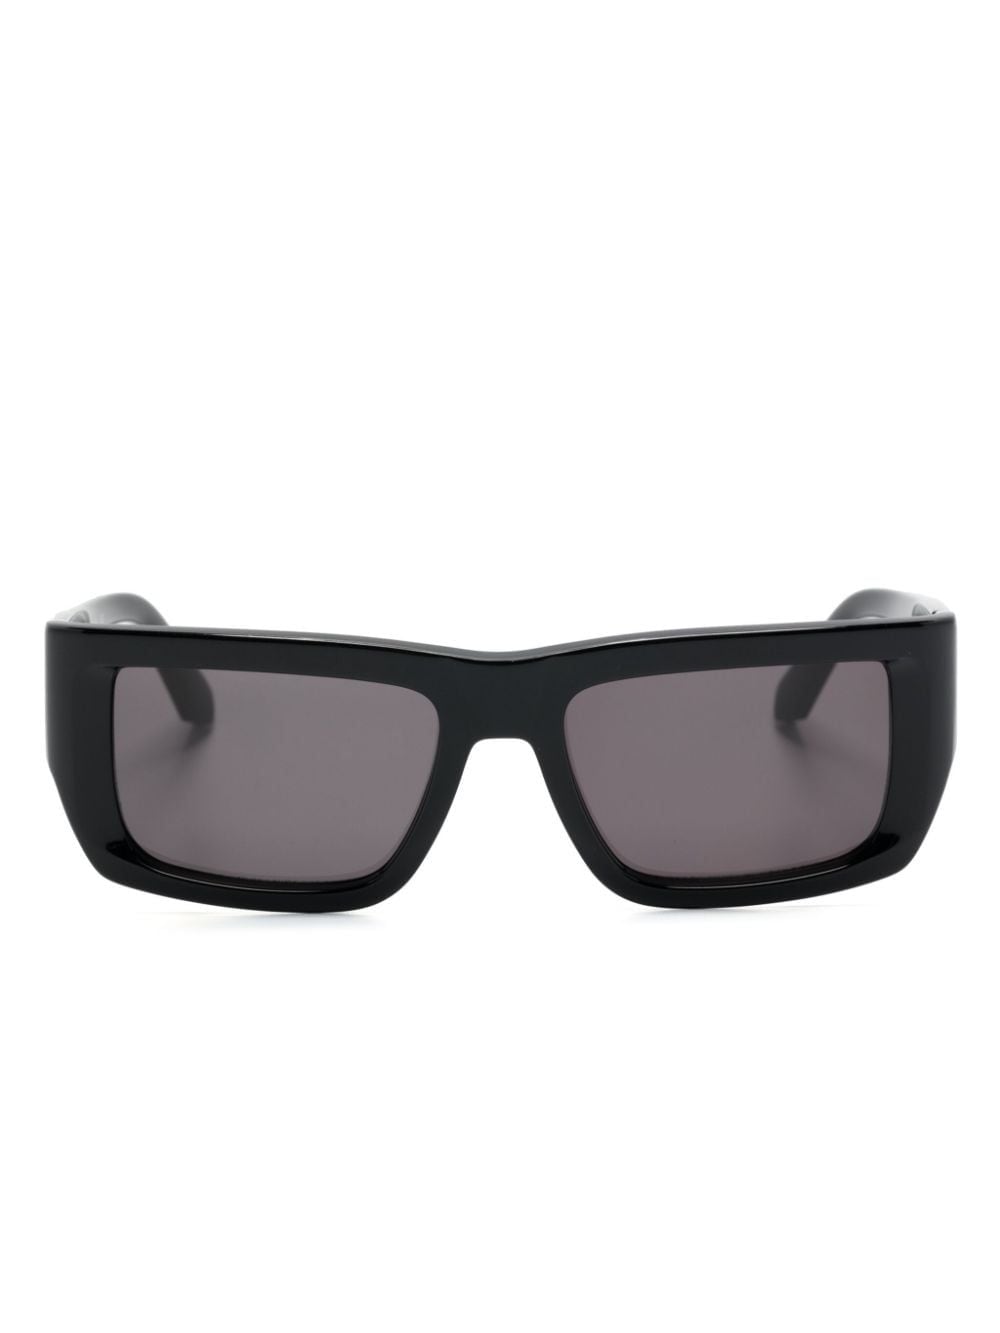 Off-White Prescott zonnebril met rechthoekig montuur - 1007 1007 BLACK DARK GREY